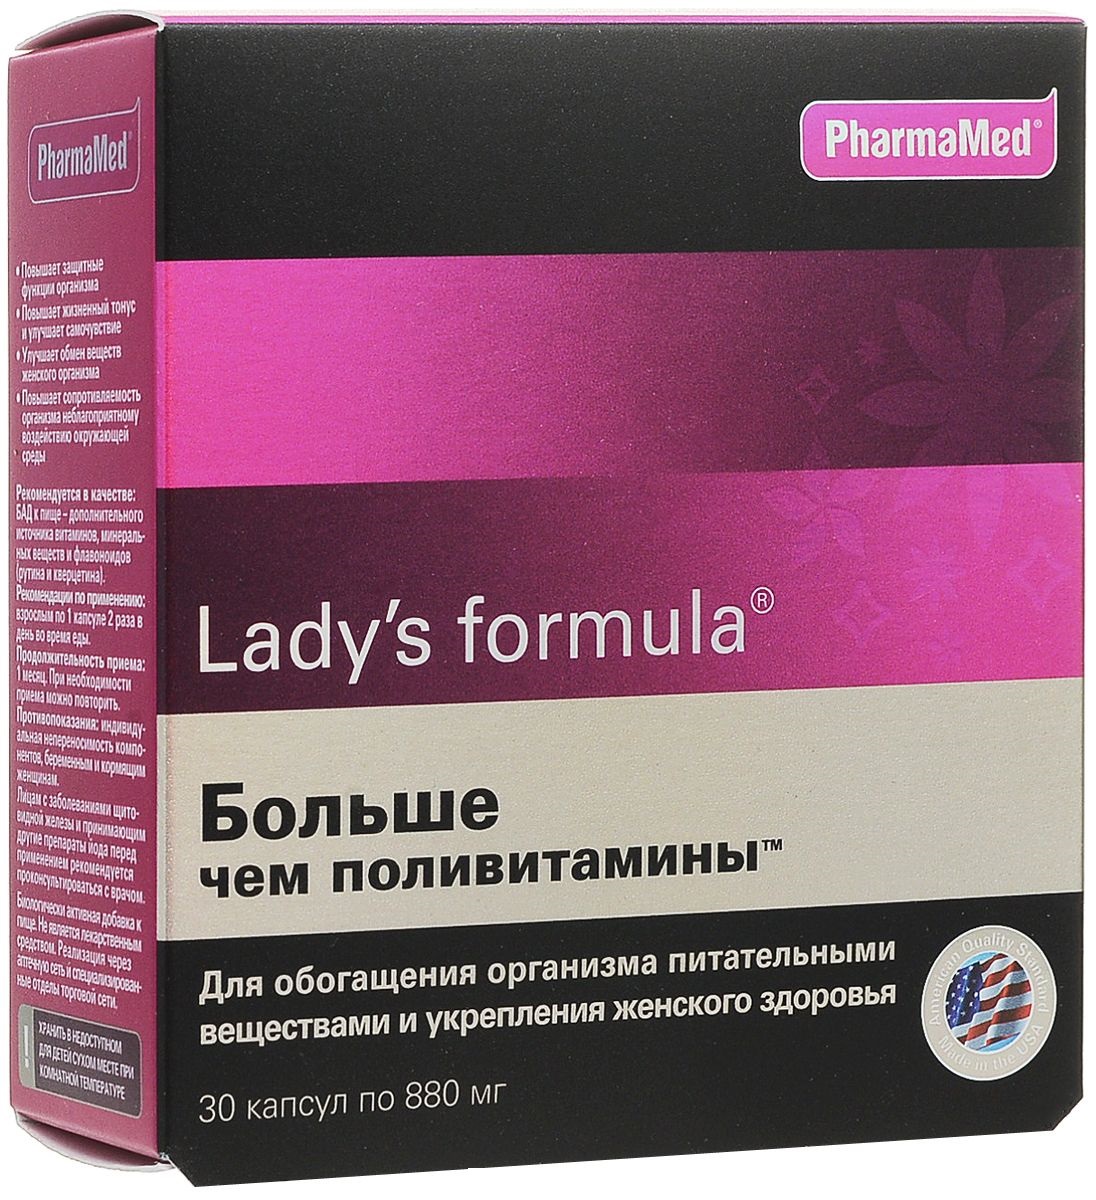 LADY'S FORMULA Больше чем поливитамины, капсулы 880 мг № 30